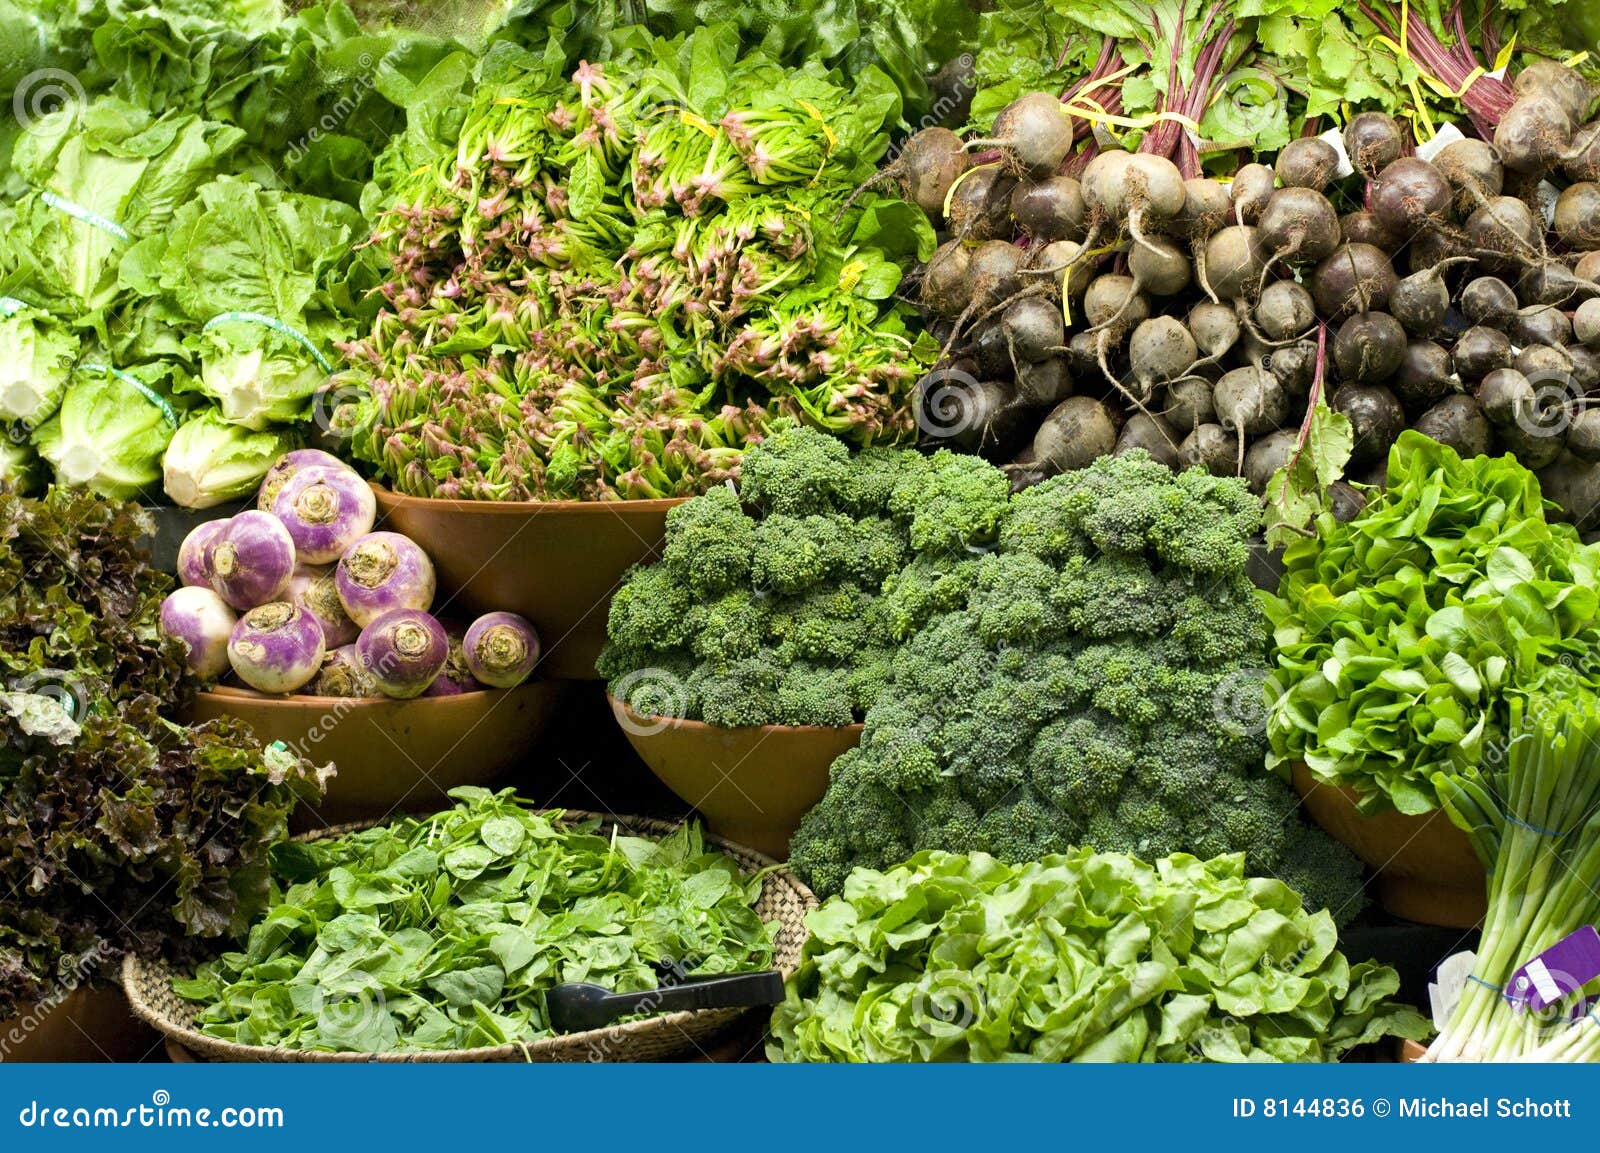 Качество растительных продуктов. Овощи и зелень. Растительная пища. Растительная пища зелень. Продукты растения.